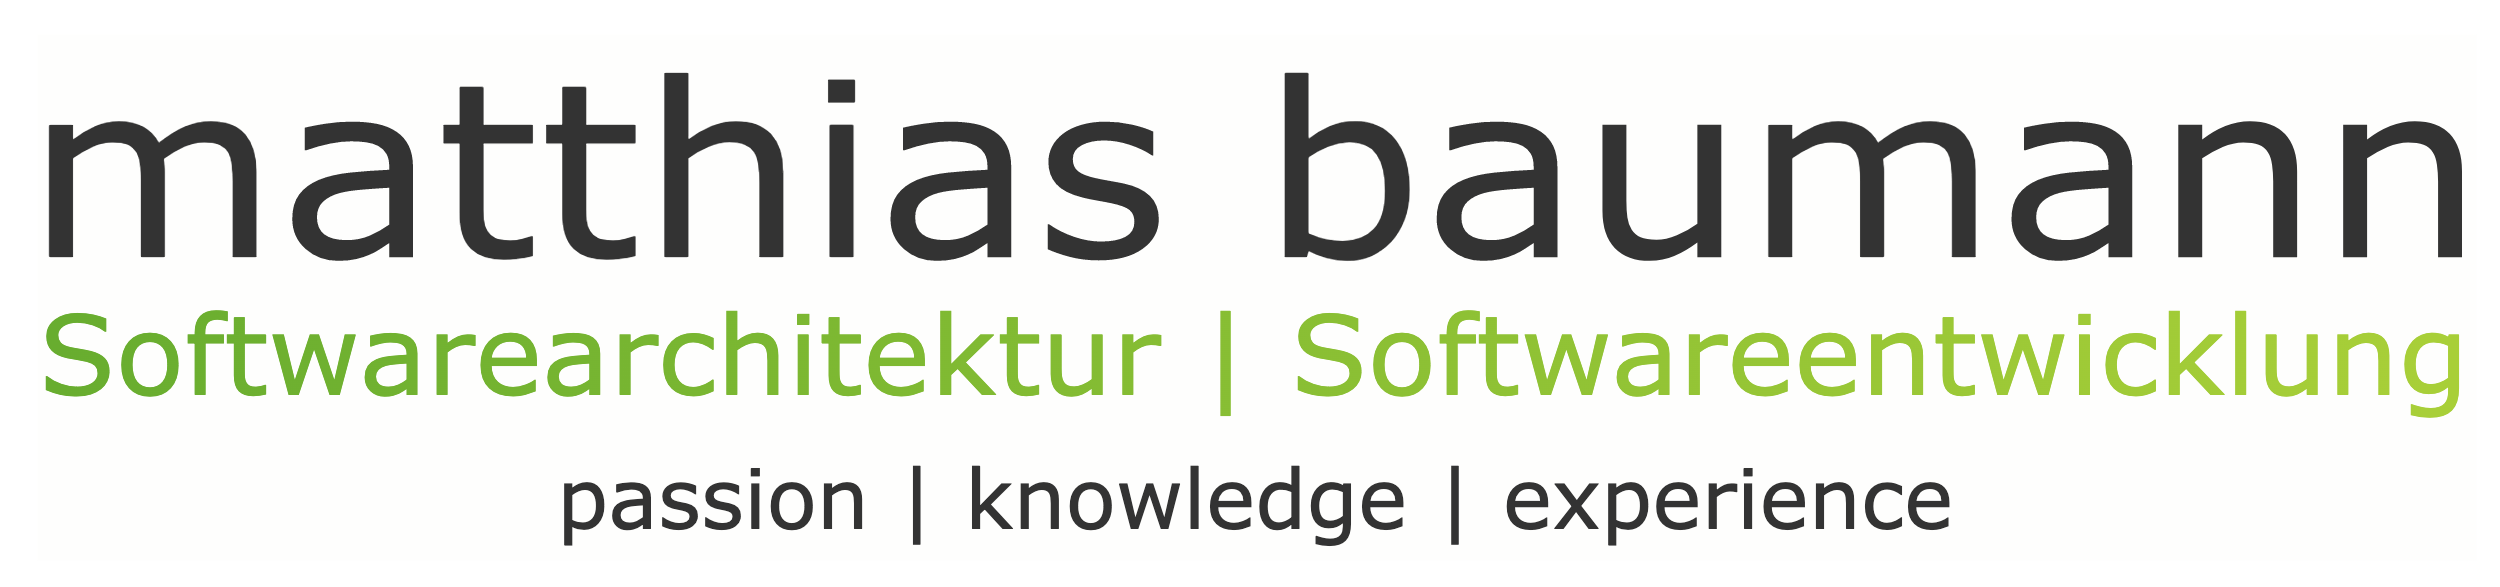 logo matthias baumann softwareentwicklung